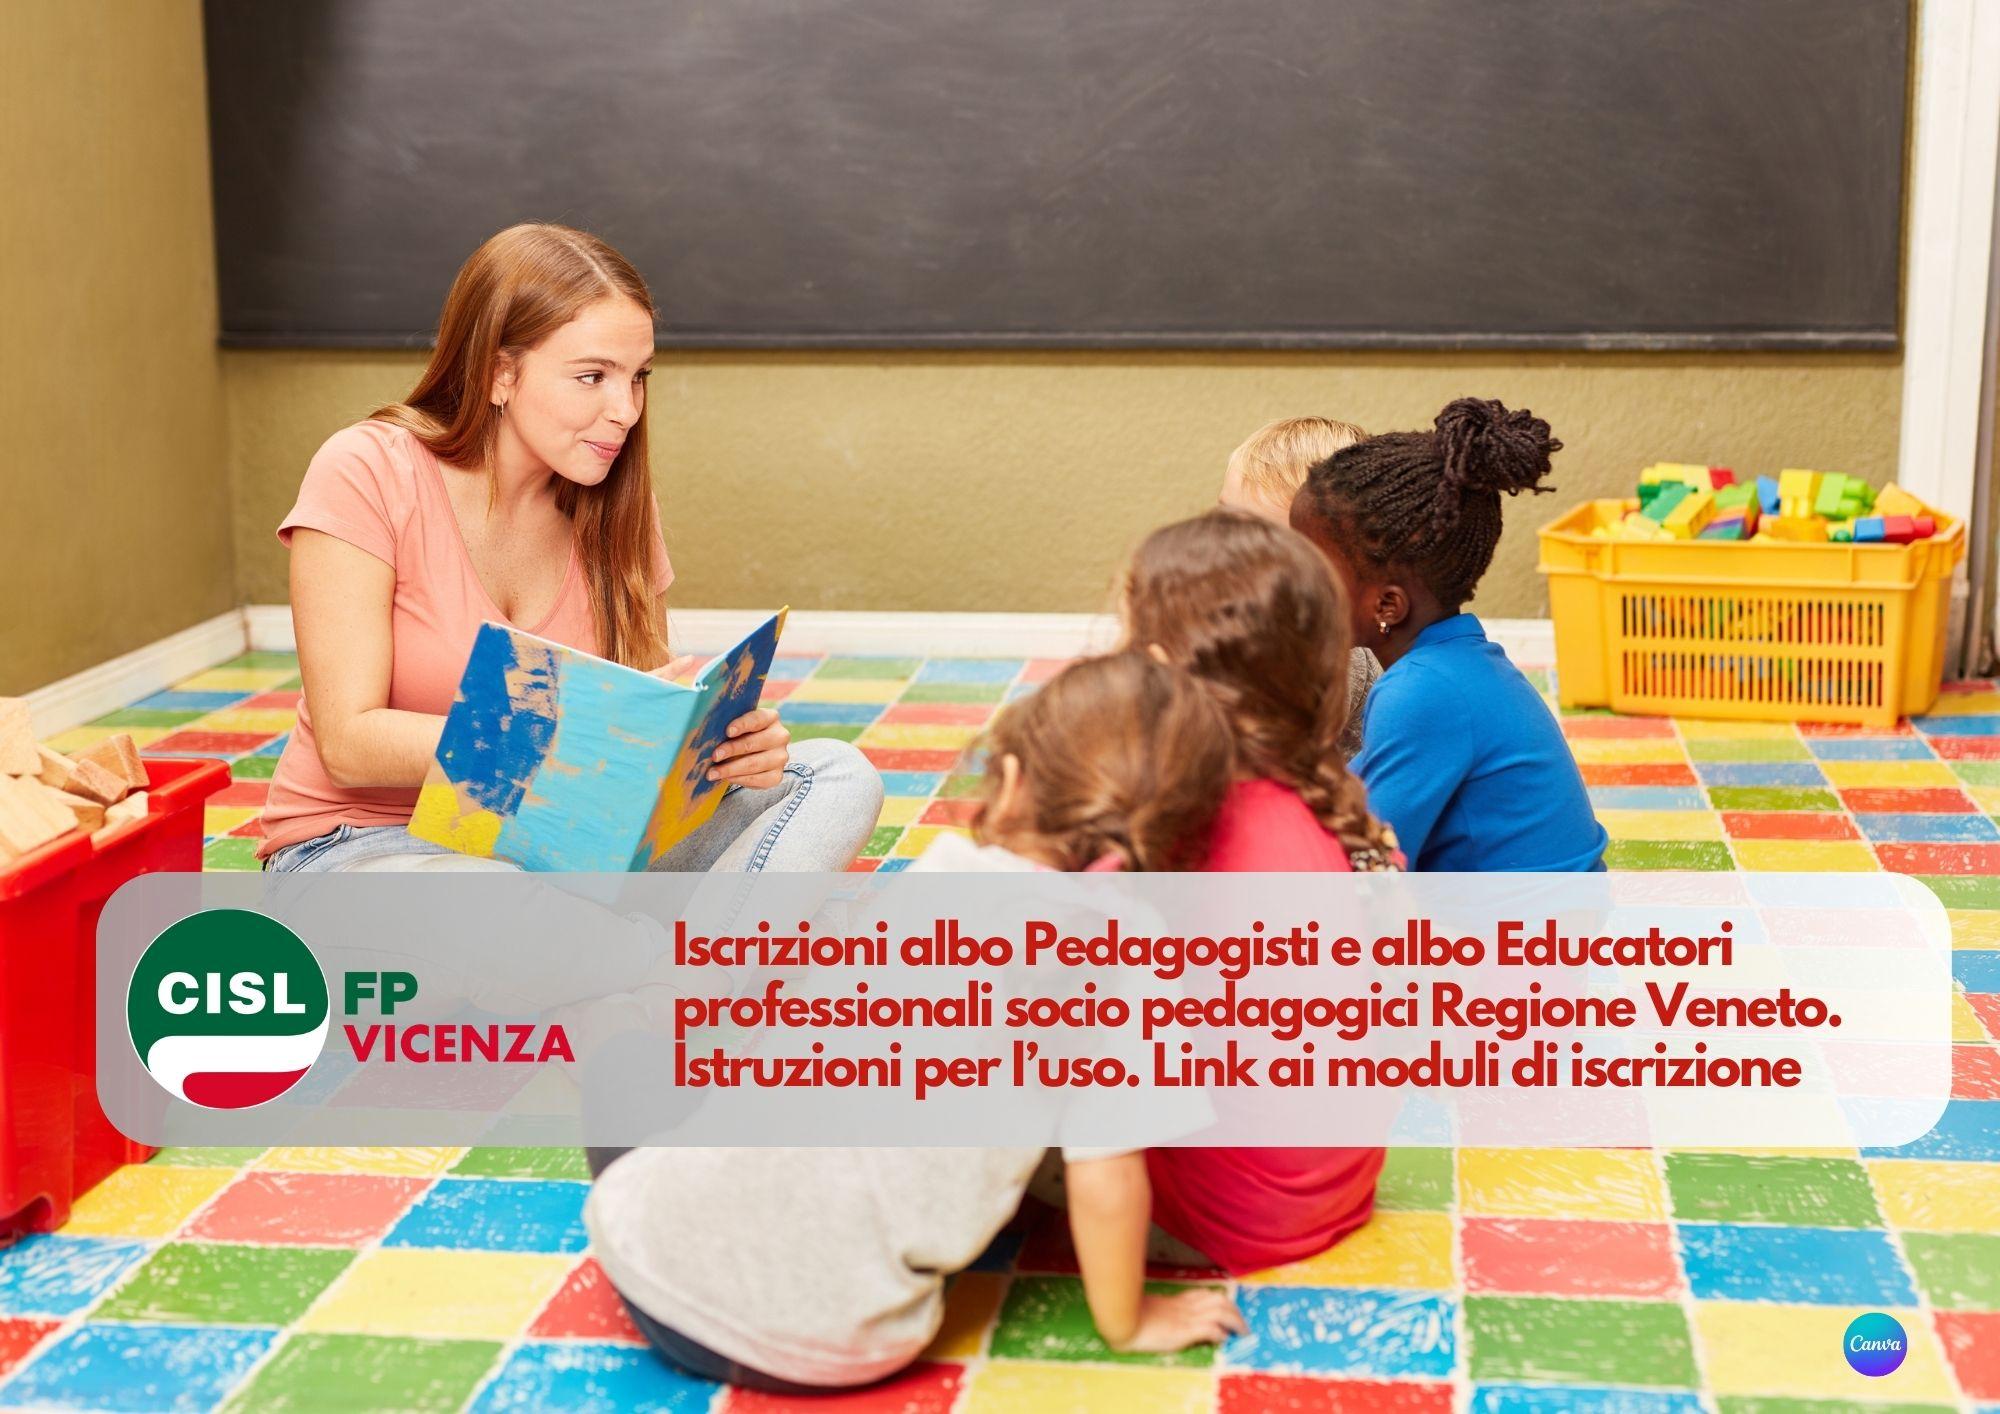 CISL FP Vicenza. Iscrizioni albo Pedagogisti e albo Educatori professionali socio pedagogici